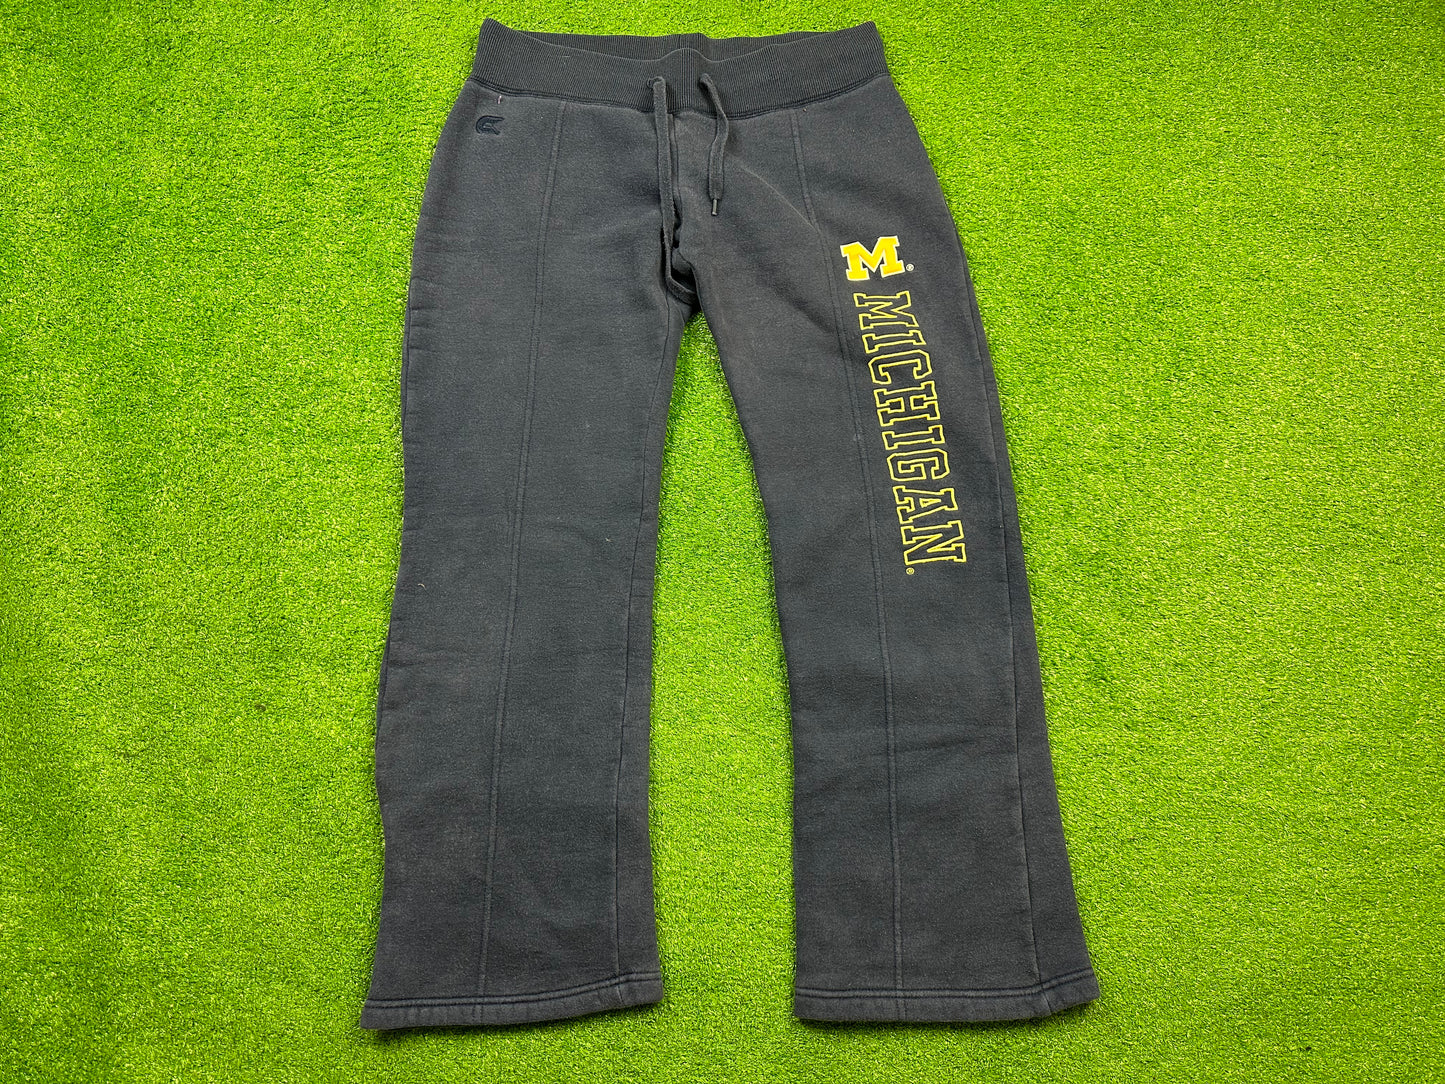 Michigan Sweat Pants